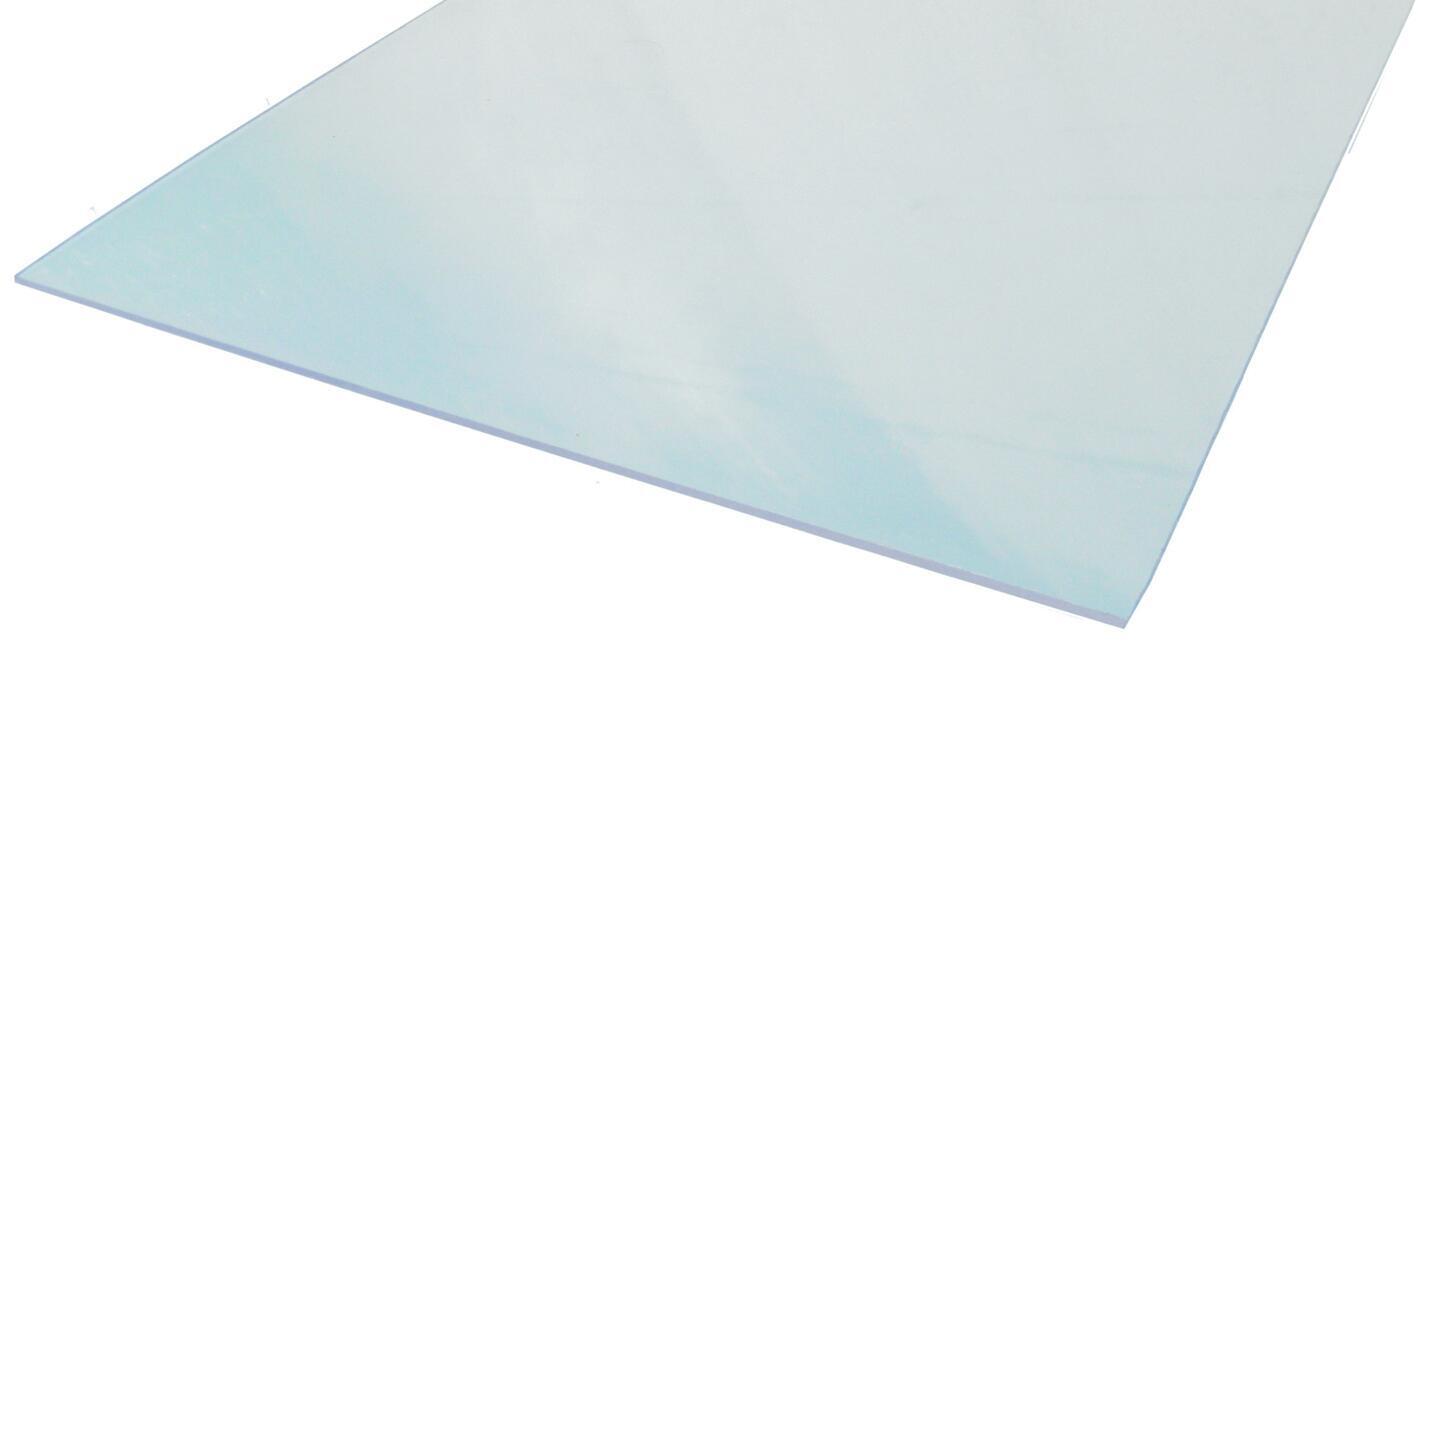 Vetro Sintetico in Lastra Trasparente Spessore 2,5 mm misura 200X100 cm